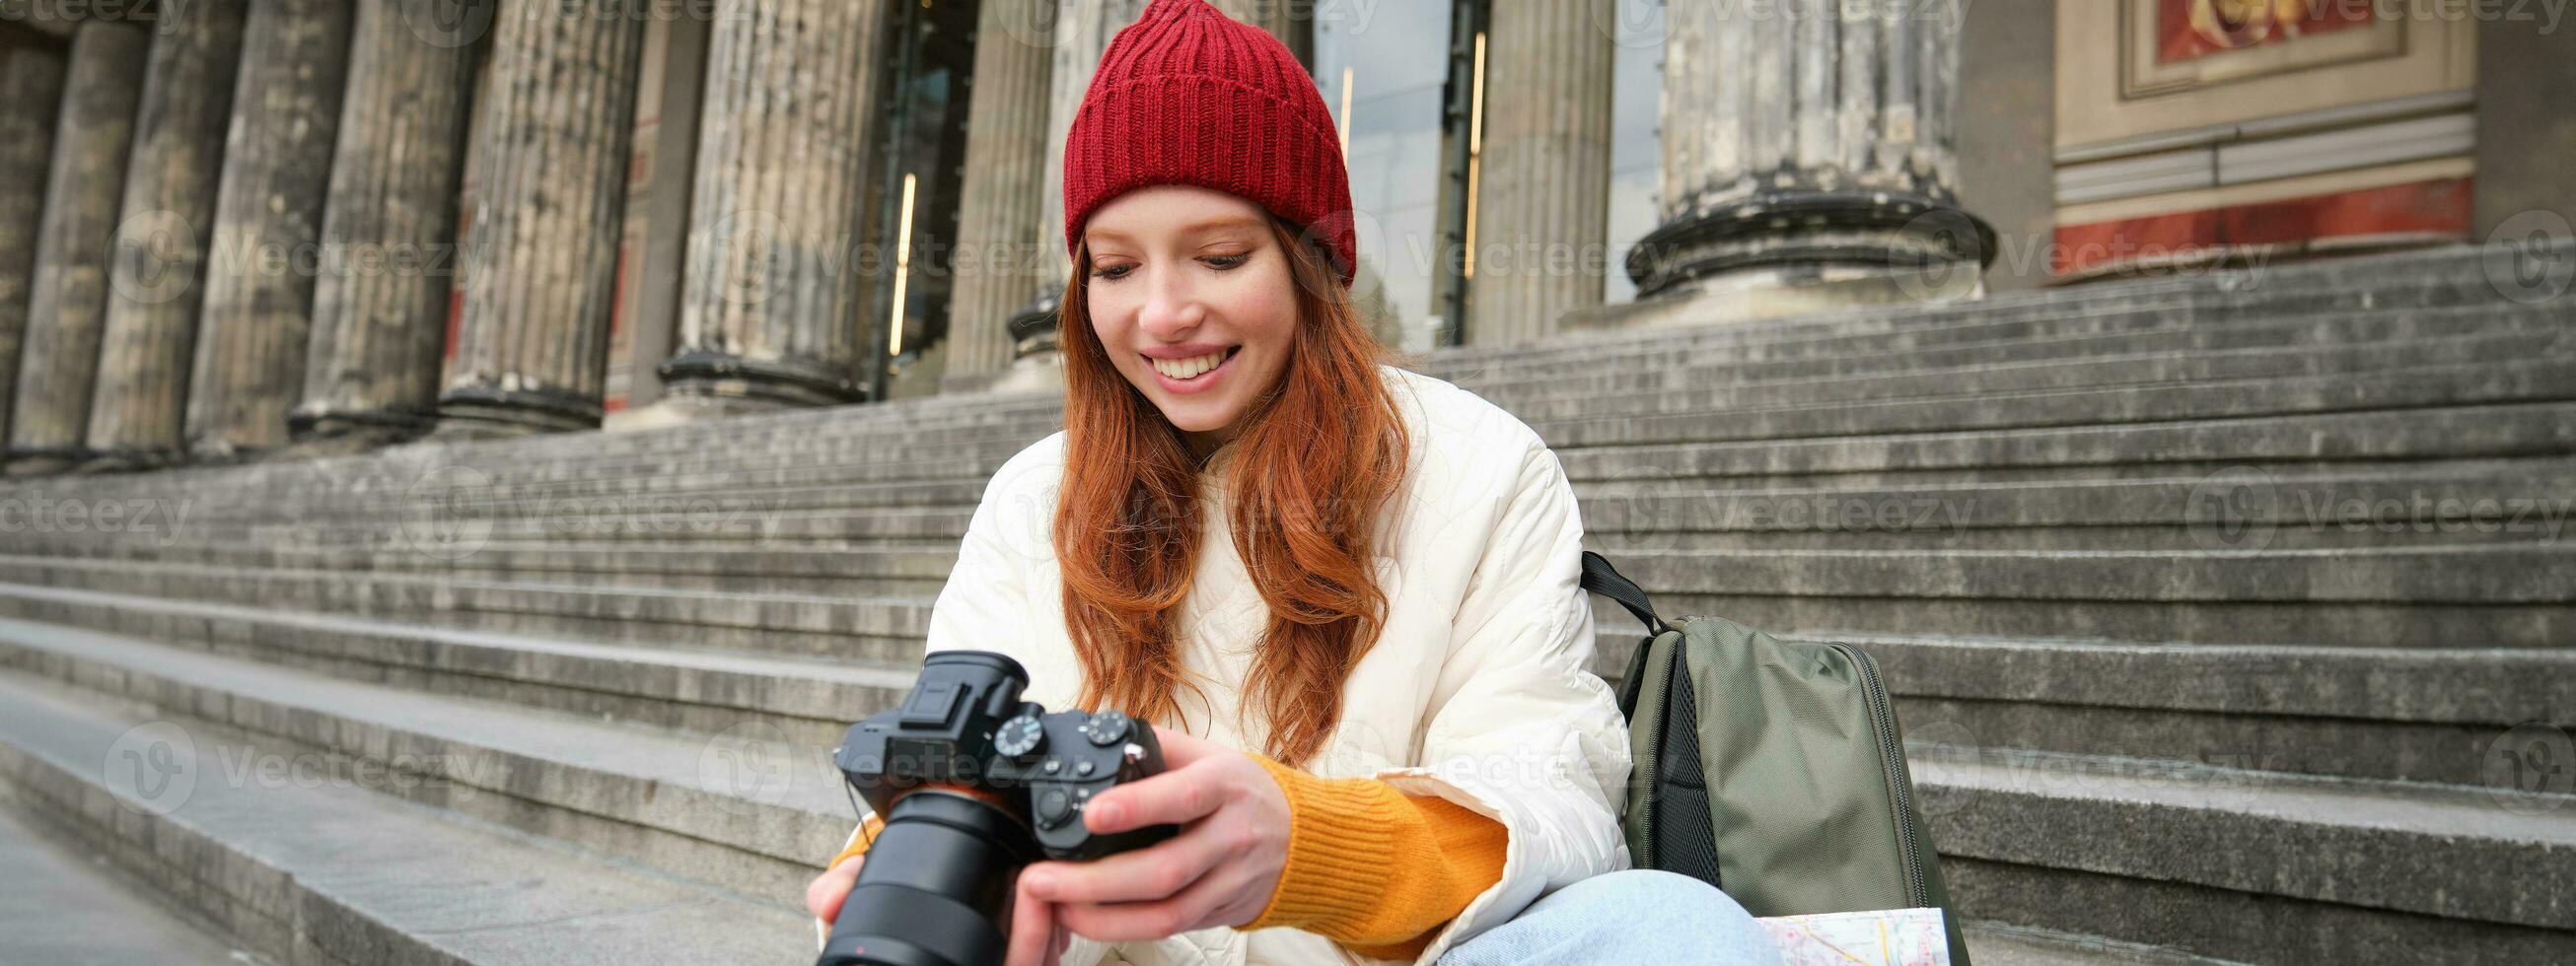 jong leerling, fotograaf zit Aan straat trap en cheques haar schoten Aan professioneel camera, nemen foto's buitenshuis foto